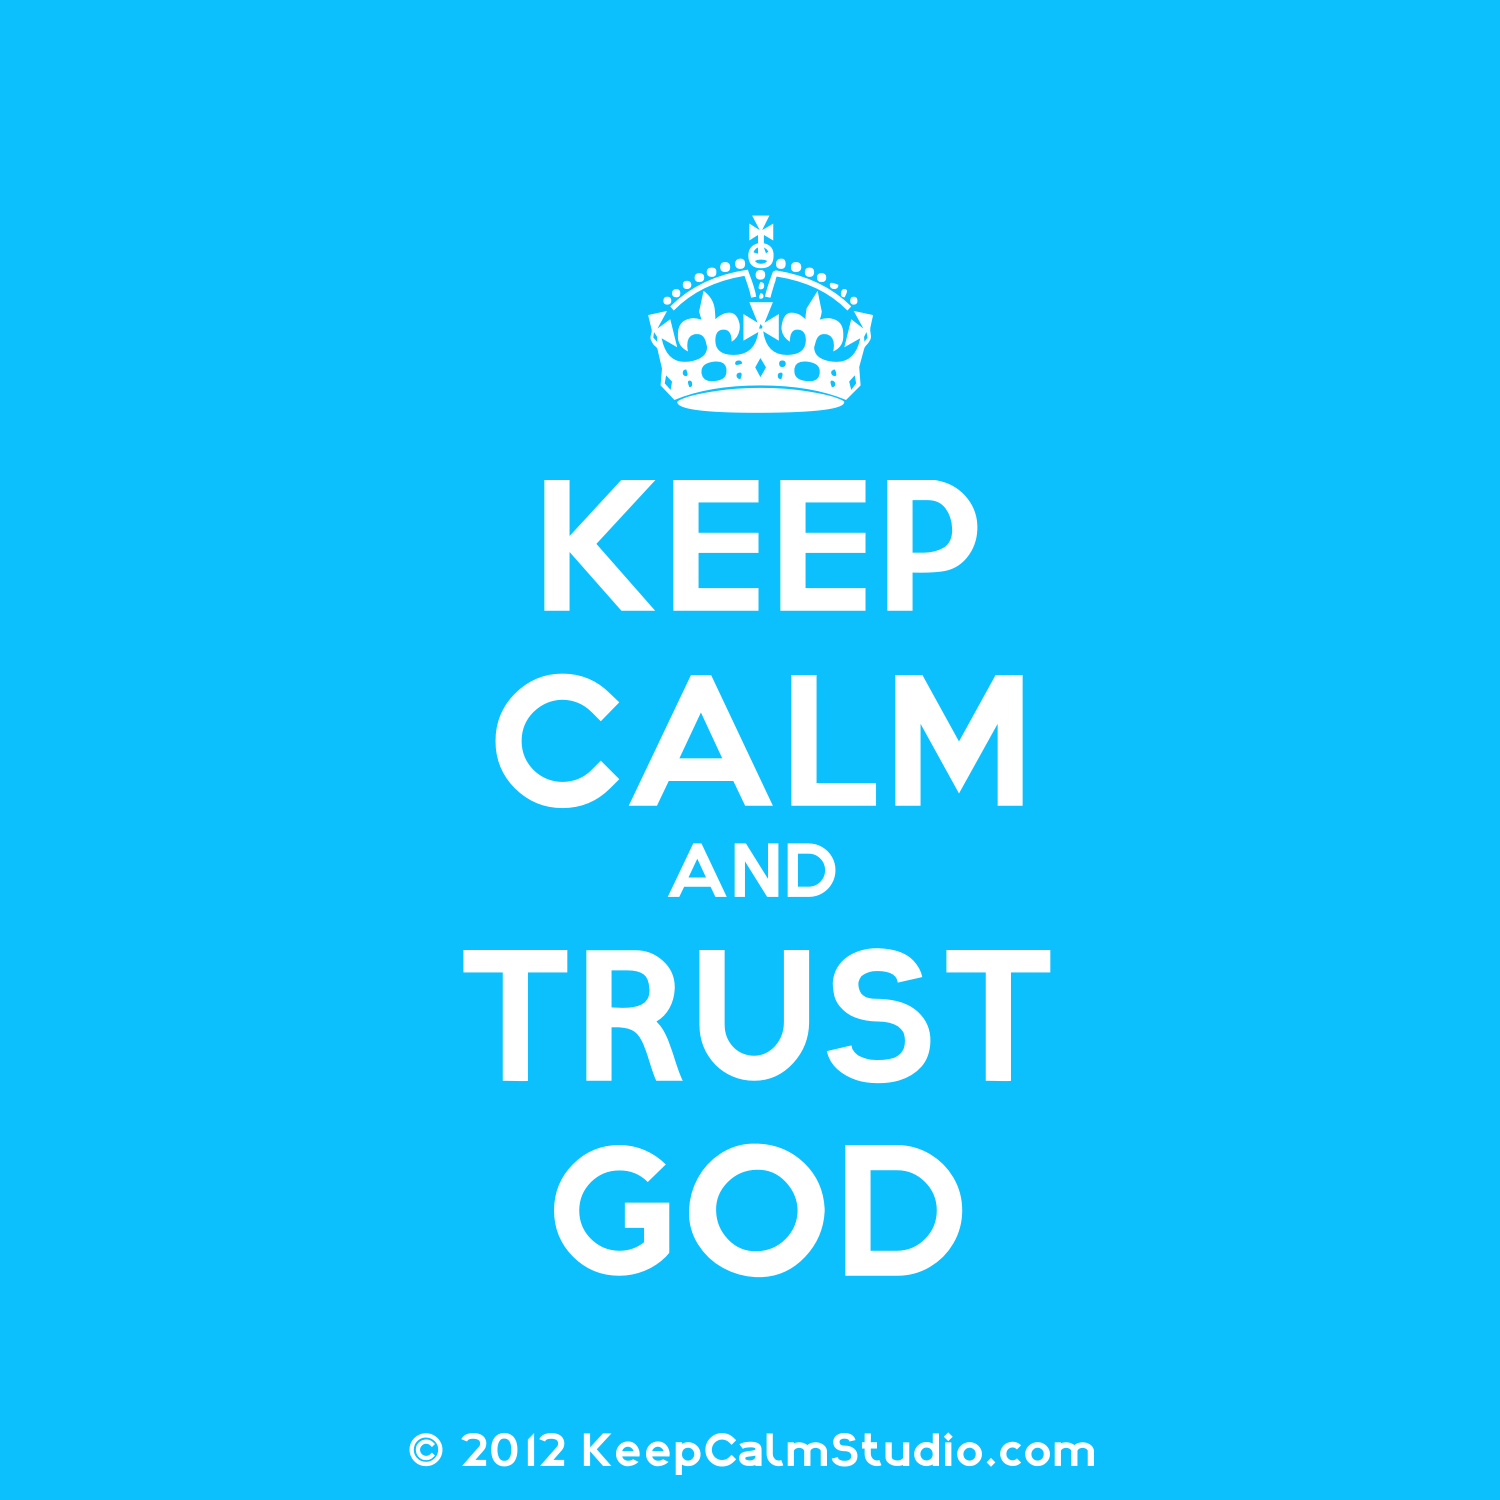 Trusting God: Getting it righ